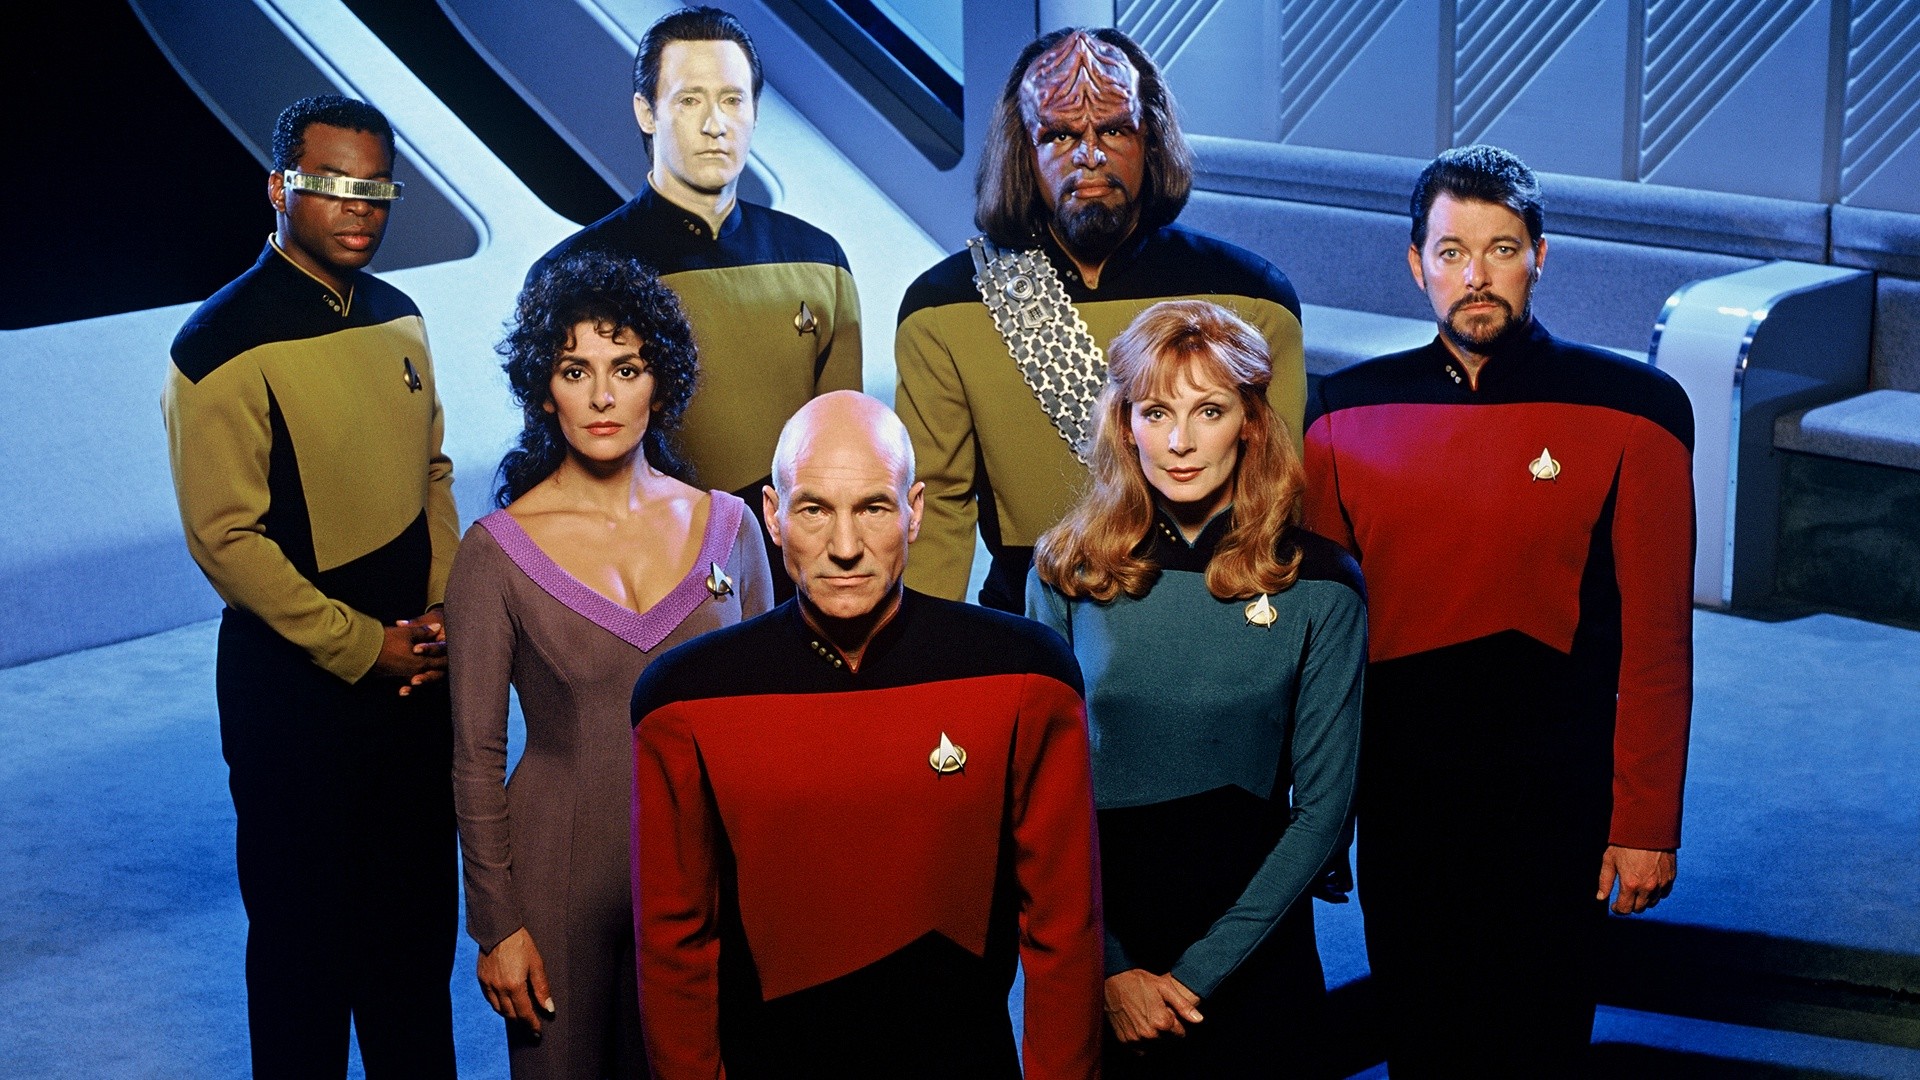 Canal americano vai lançar nova série 'Star Trek' (Foto: Divulgação)